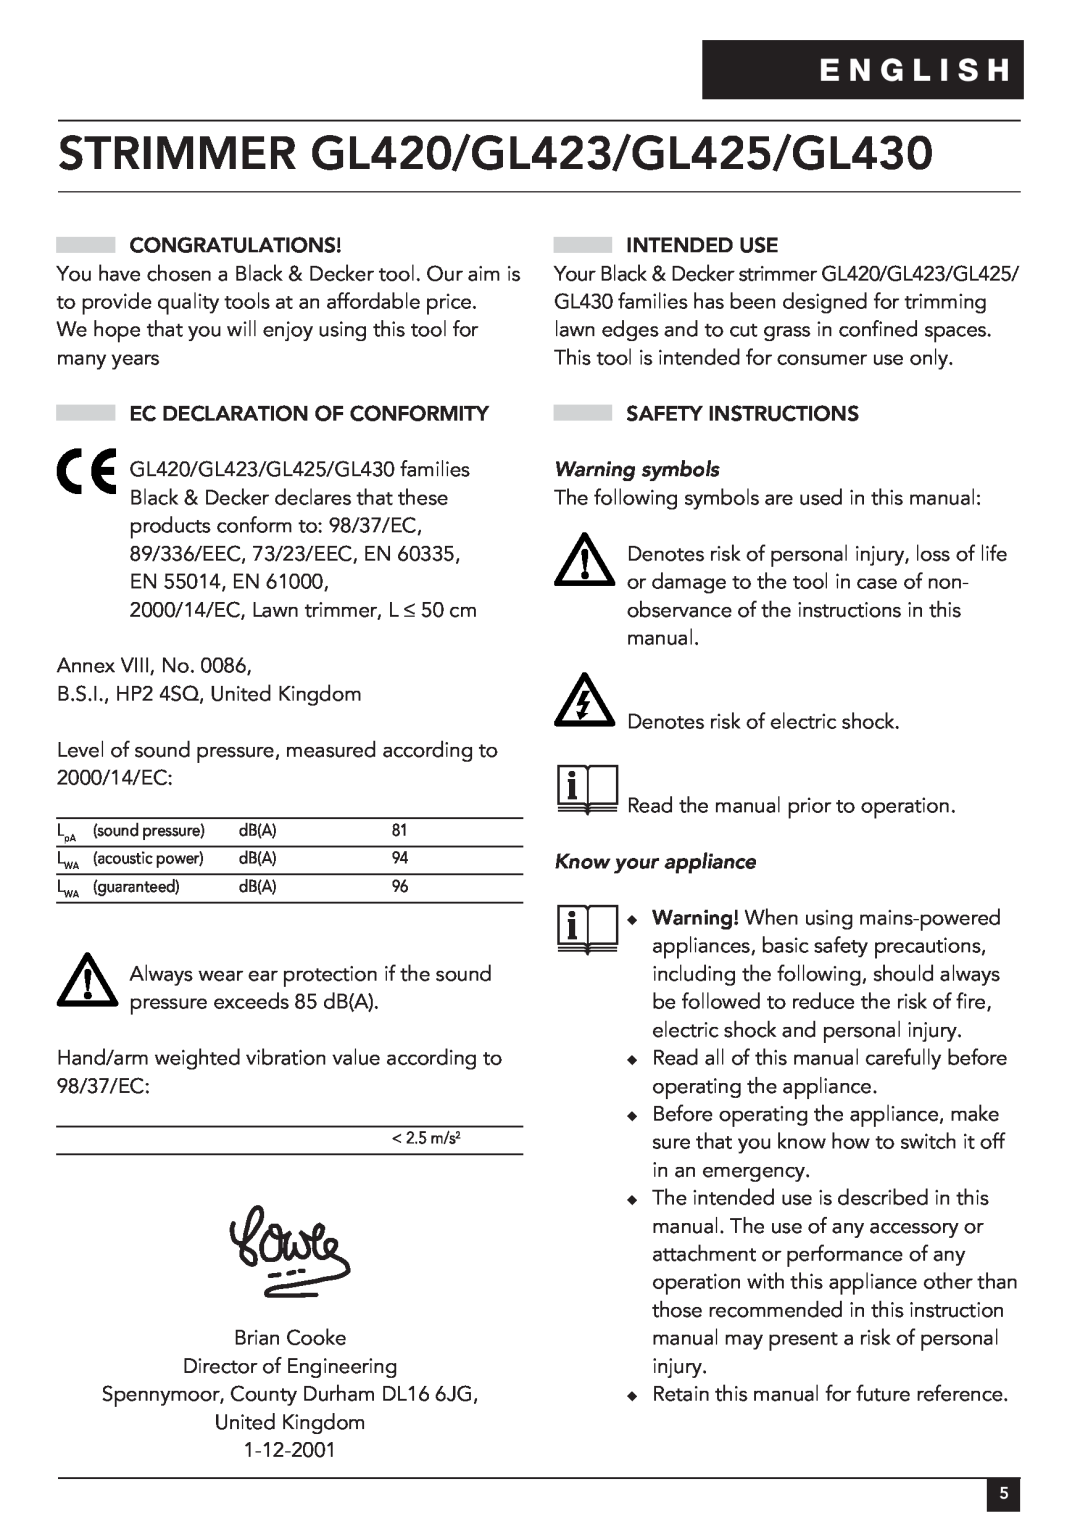 Black & Decker manual E N G L I S H, Warning symbols, Know your appliance, STRIMMER GL420/GL423/GL425/GL430 